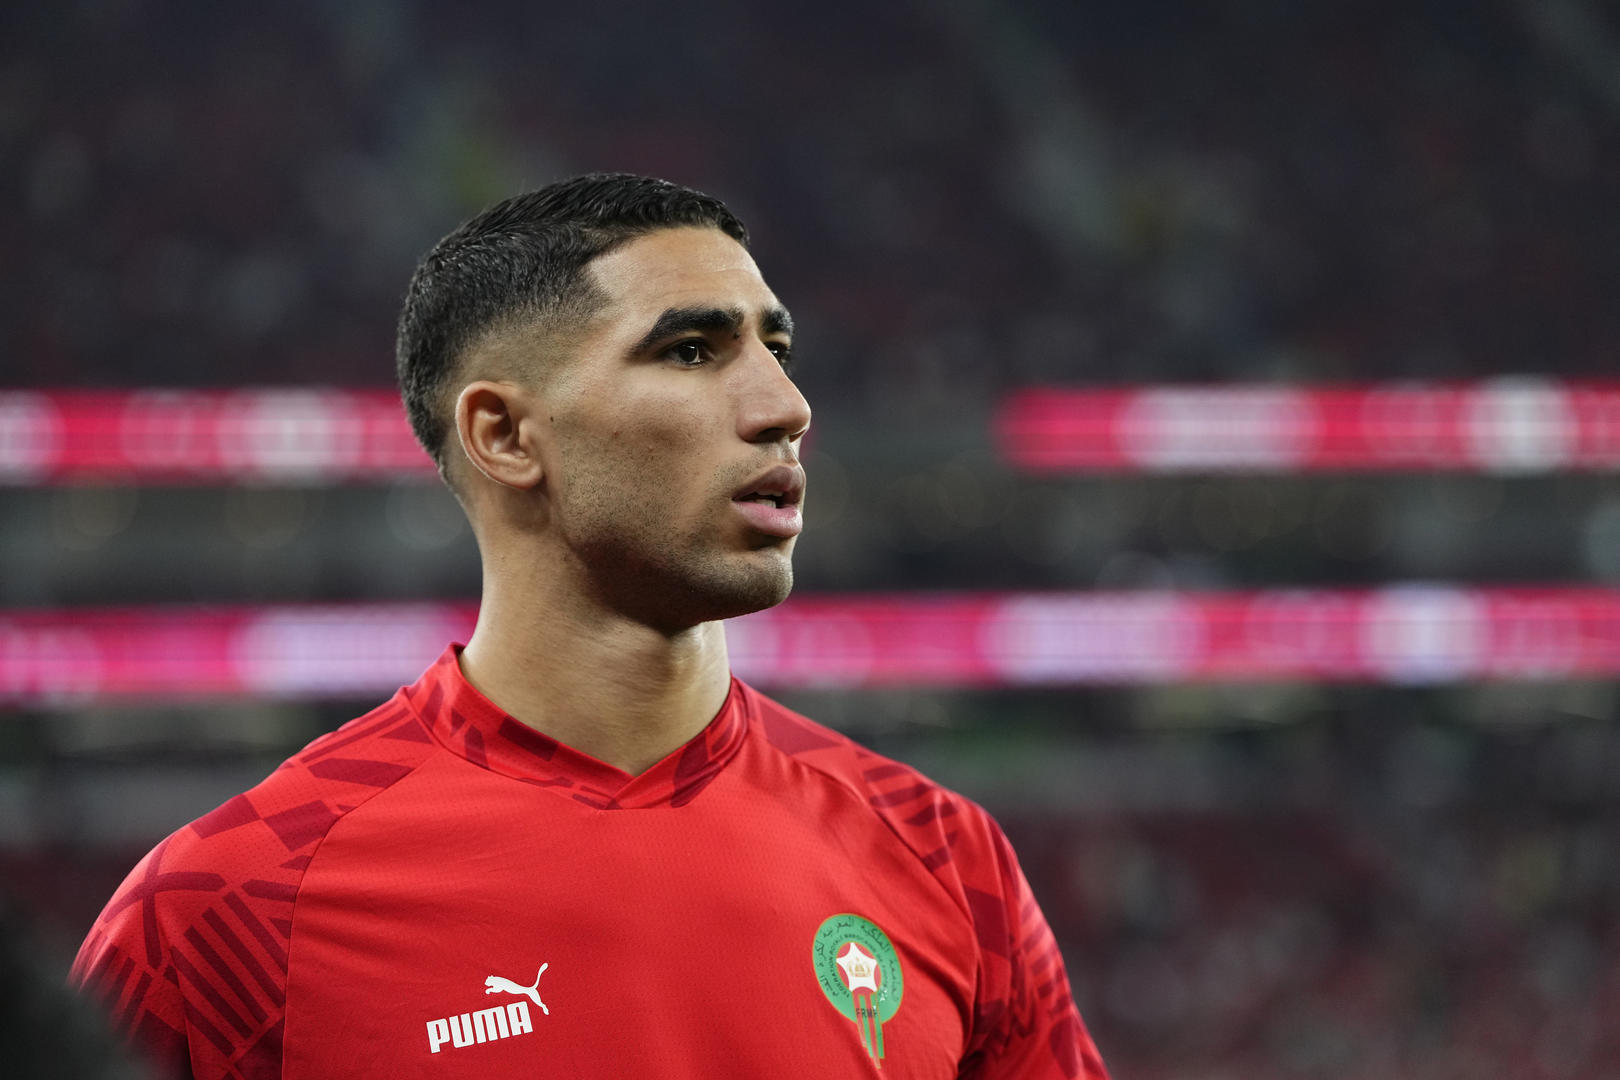 前线专访丨摩洛哥队球星阿什拉夫对好友姆巴佩将不留情